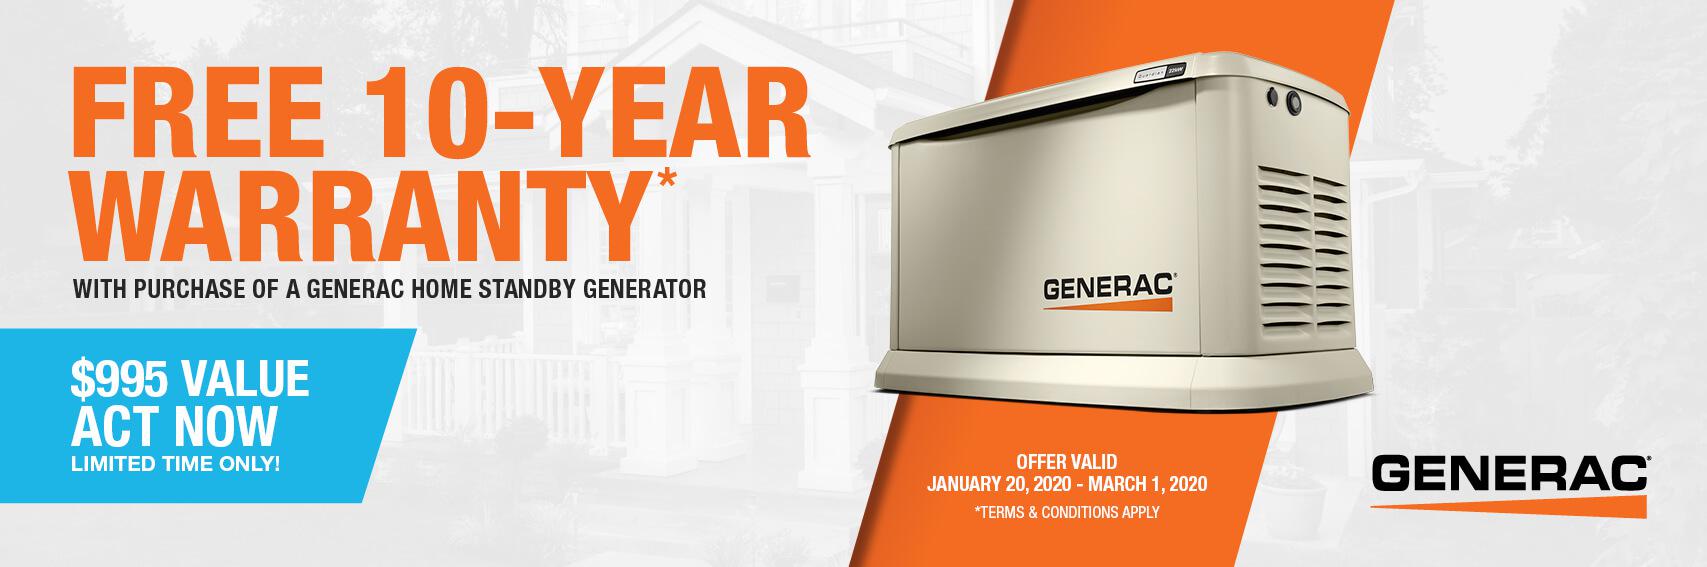 Homestandby Generator Deal | Warranty Offer | Generac Dealer | Panama City, FL